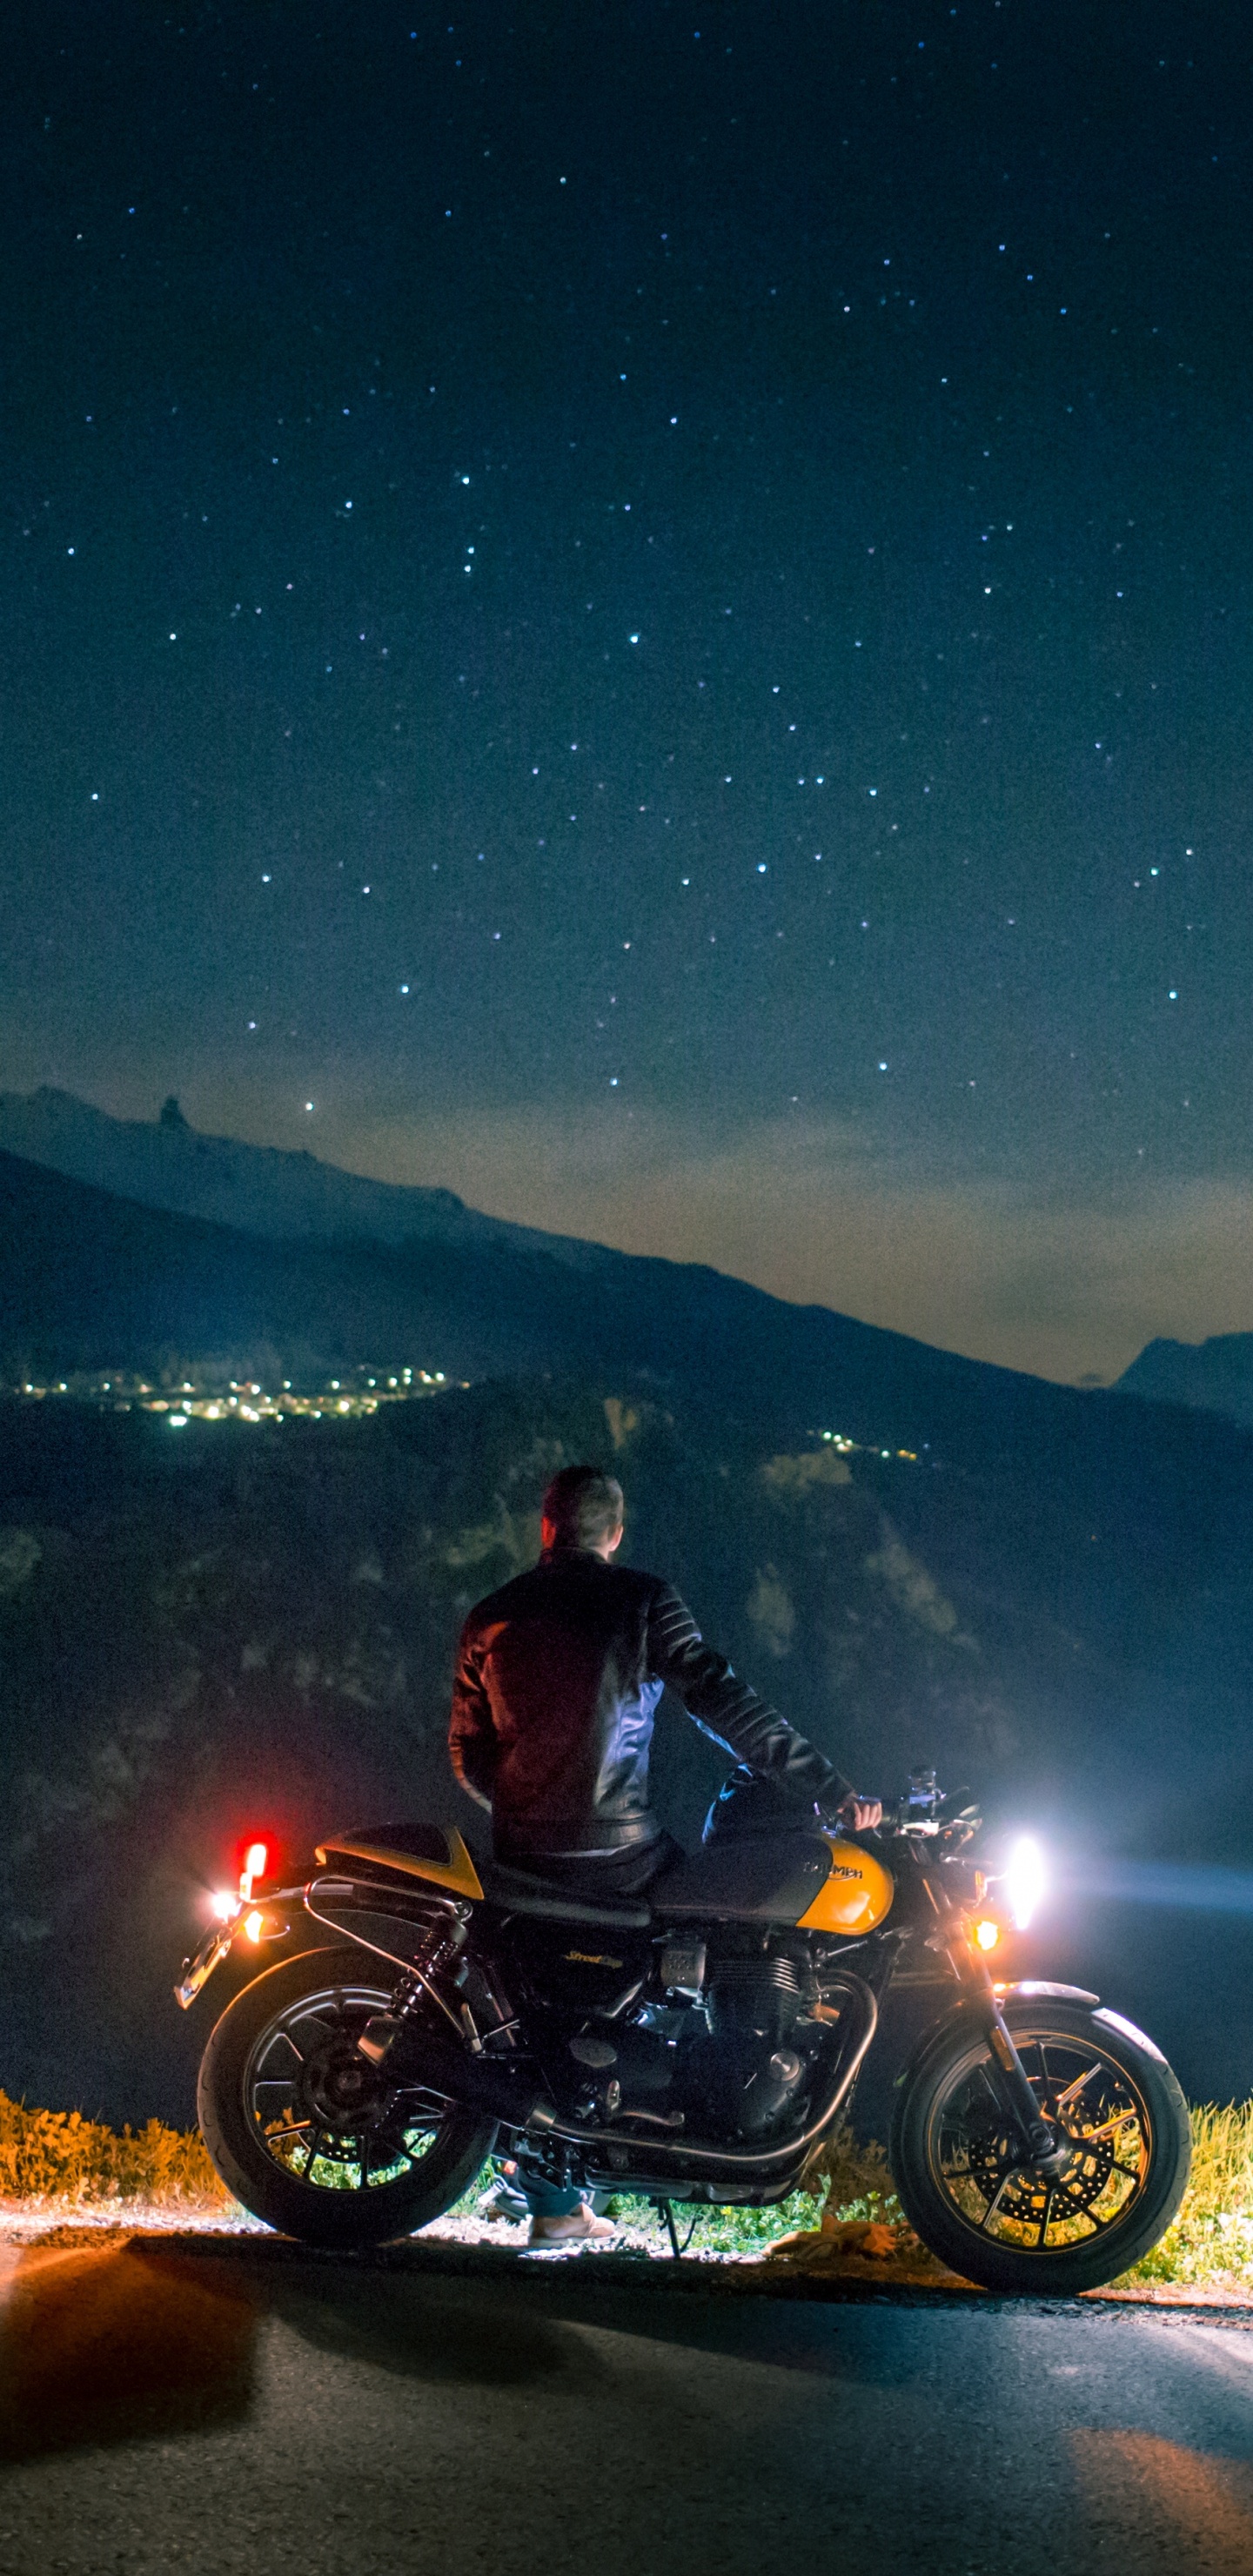 Homme Monté Sur Moto Sur Route Pendant la Nuit. Wallpaper in 1440x2960 Resolution